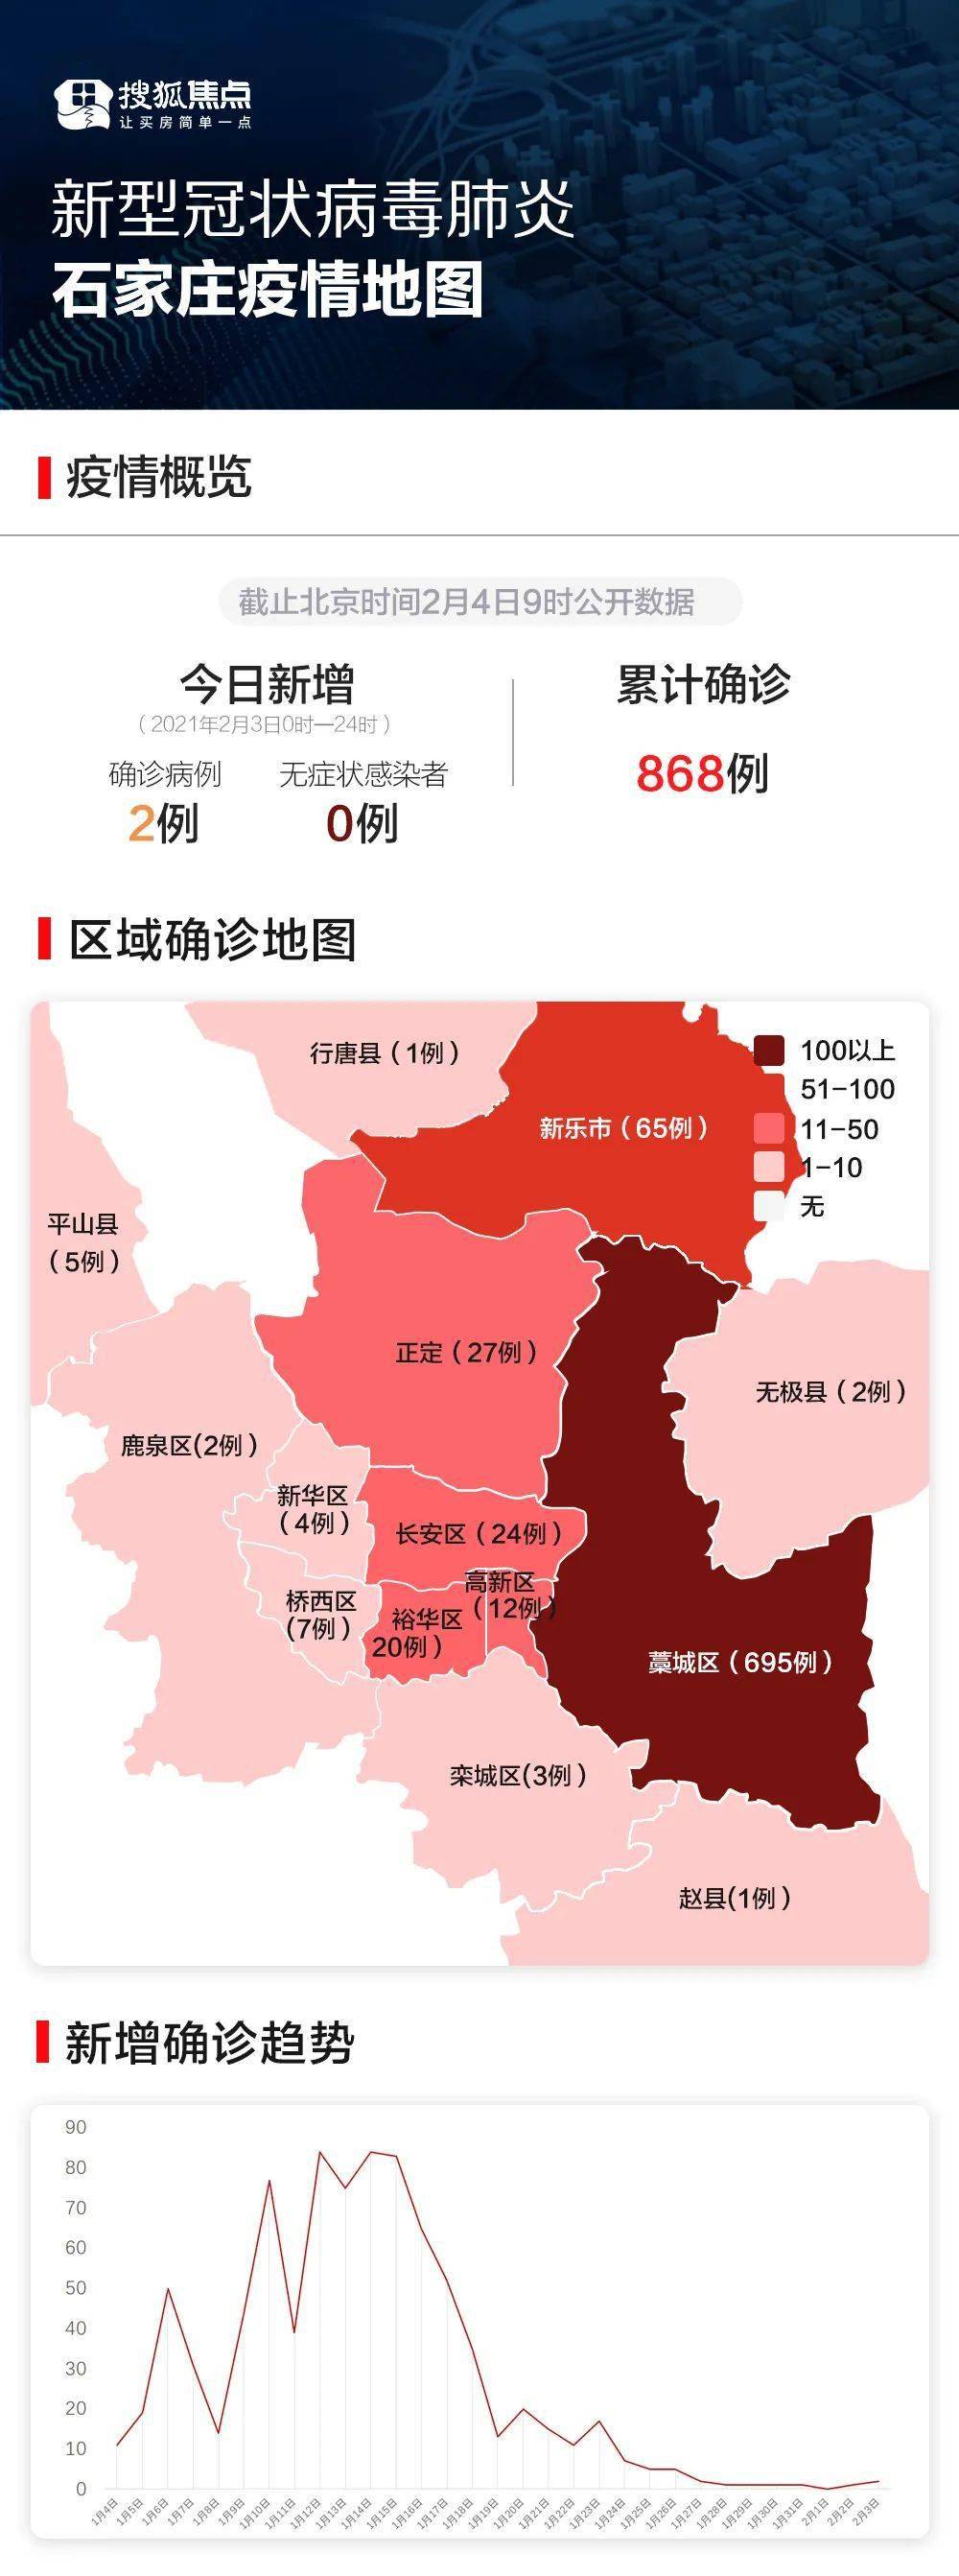 自2021年1月31日起,将石家庄正定县东平乐村调整为低风险地区